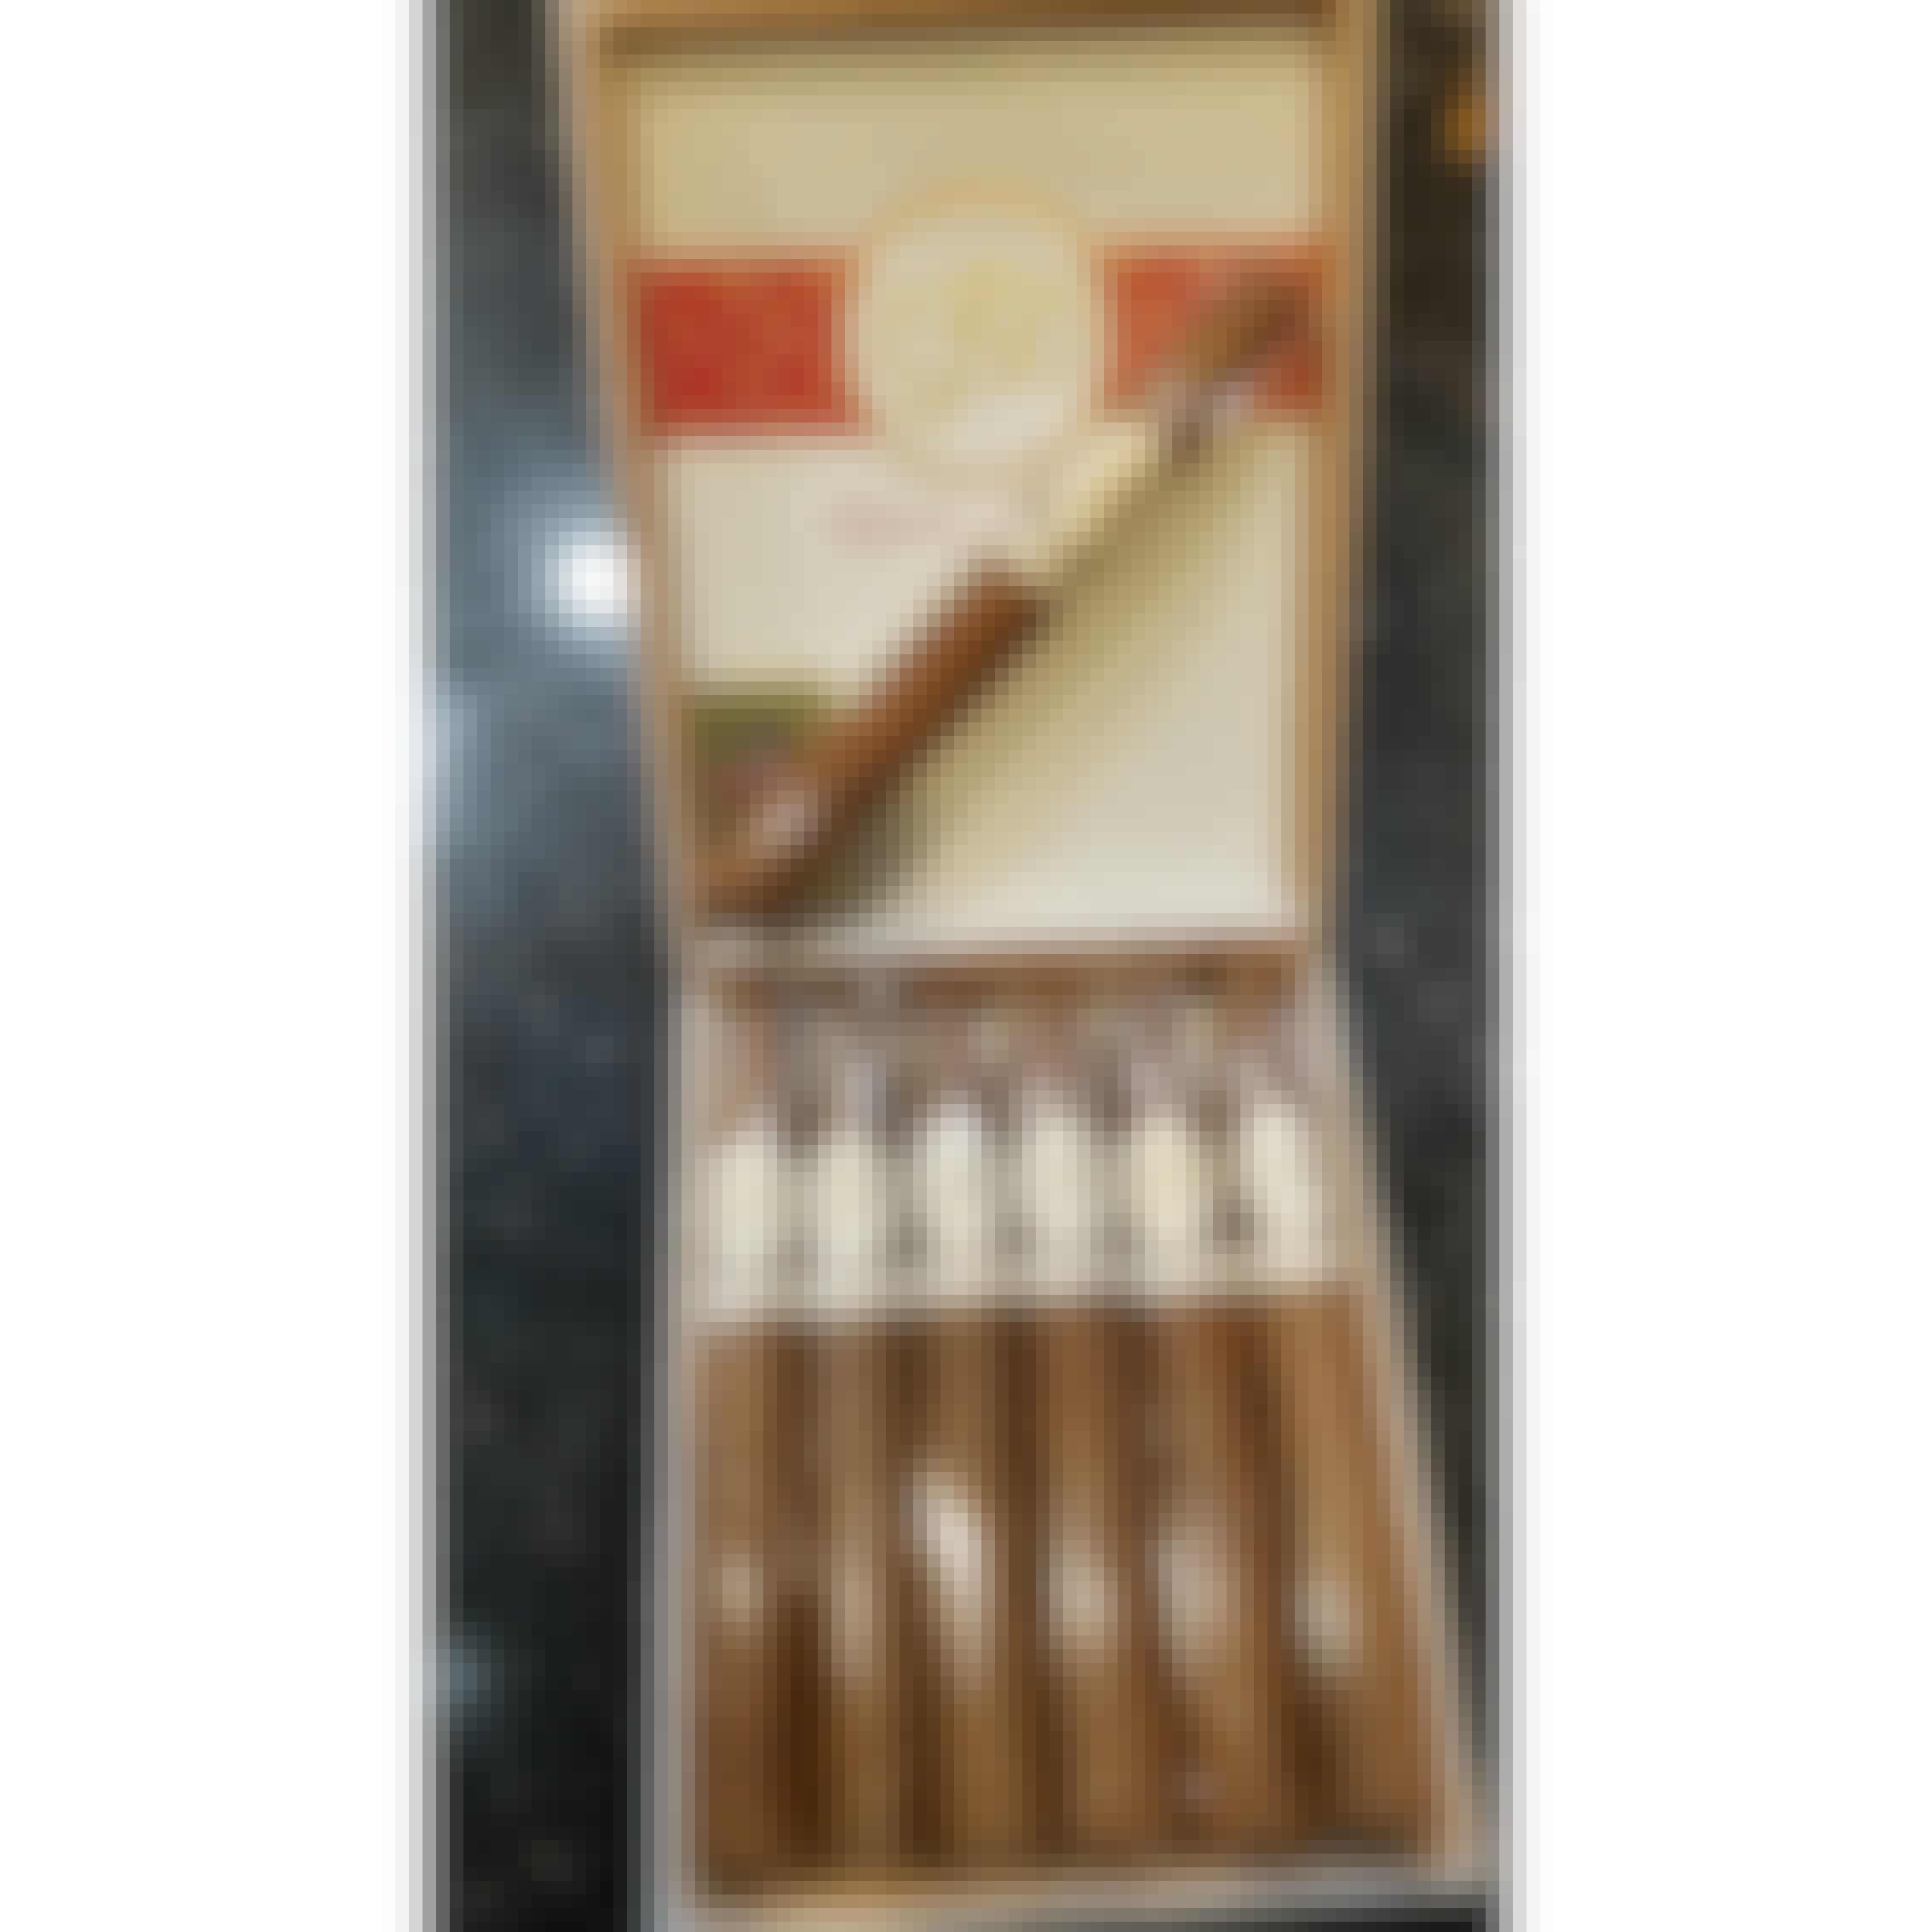 La Flor Dominicana Reserva Especial Figurado Cigar